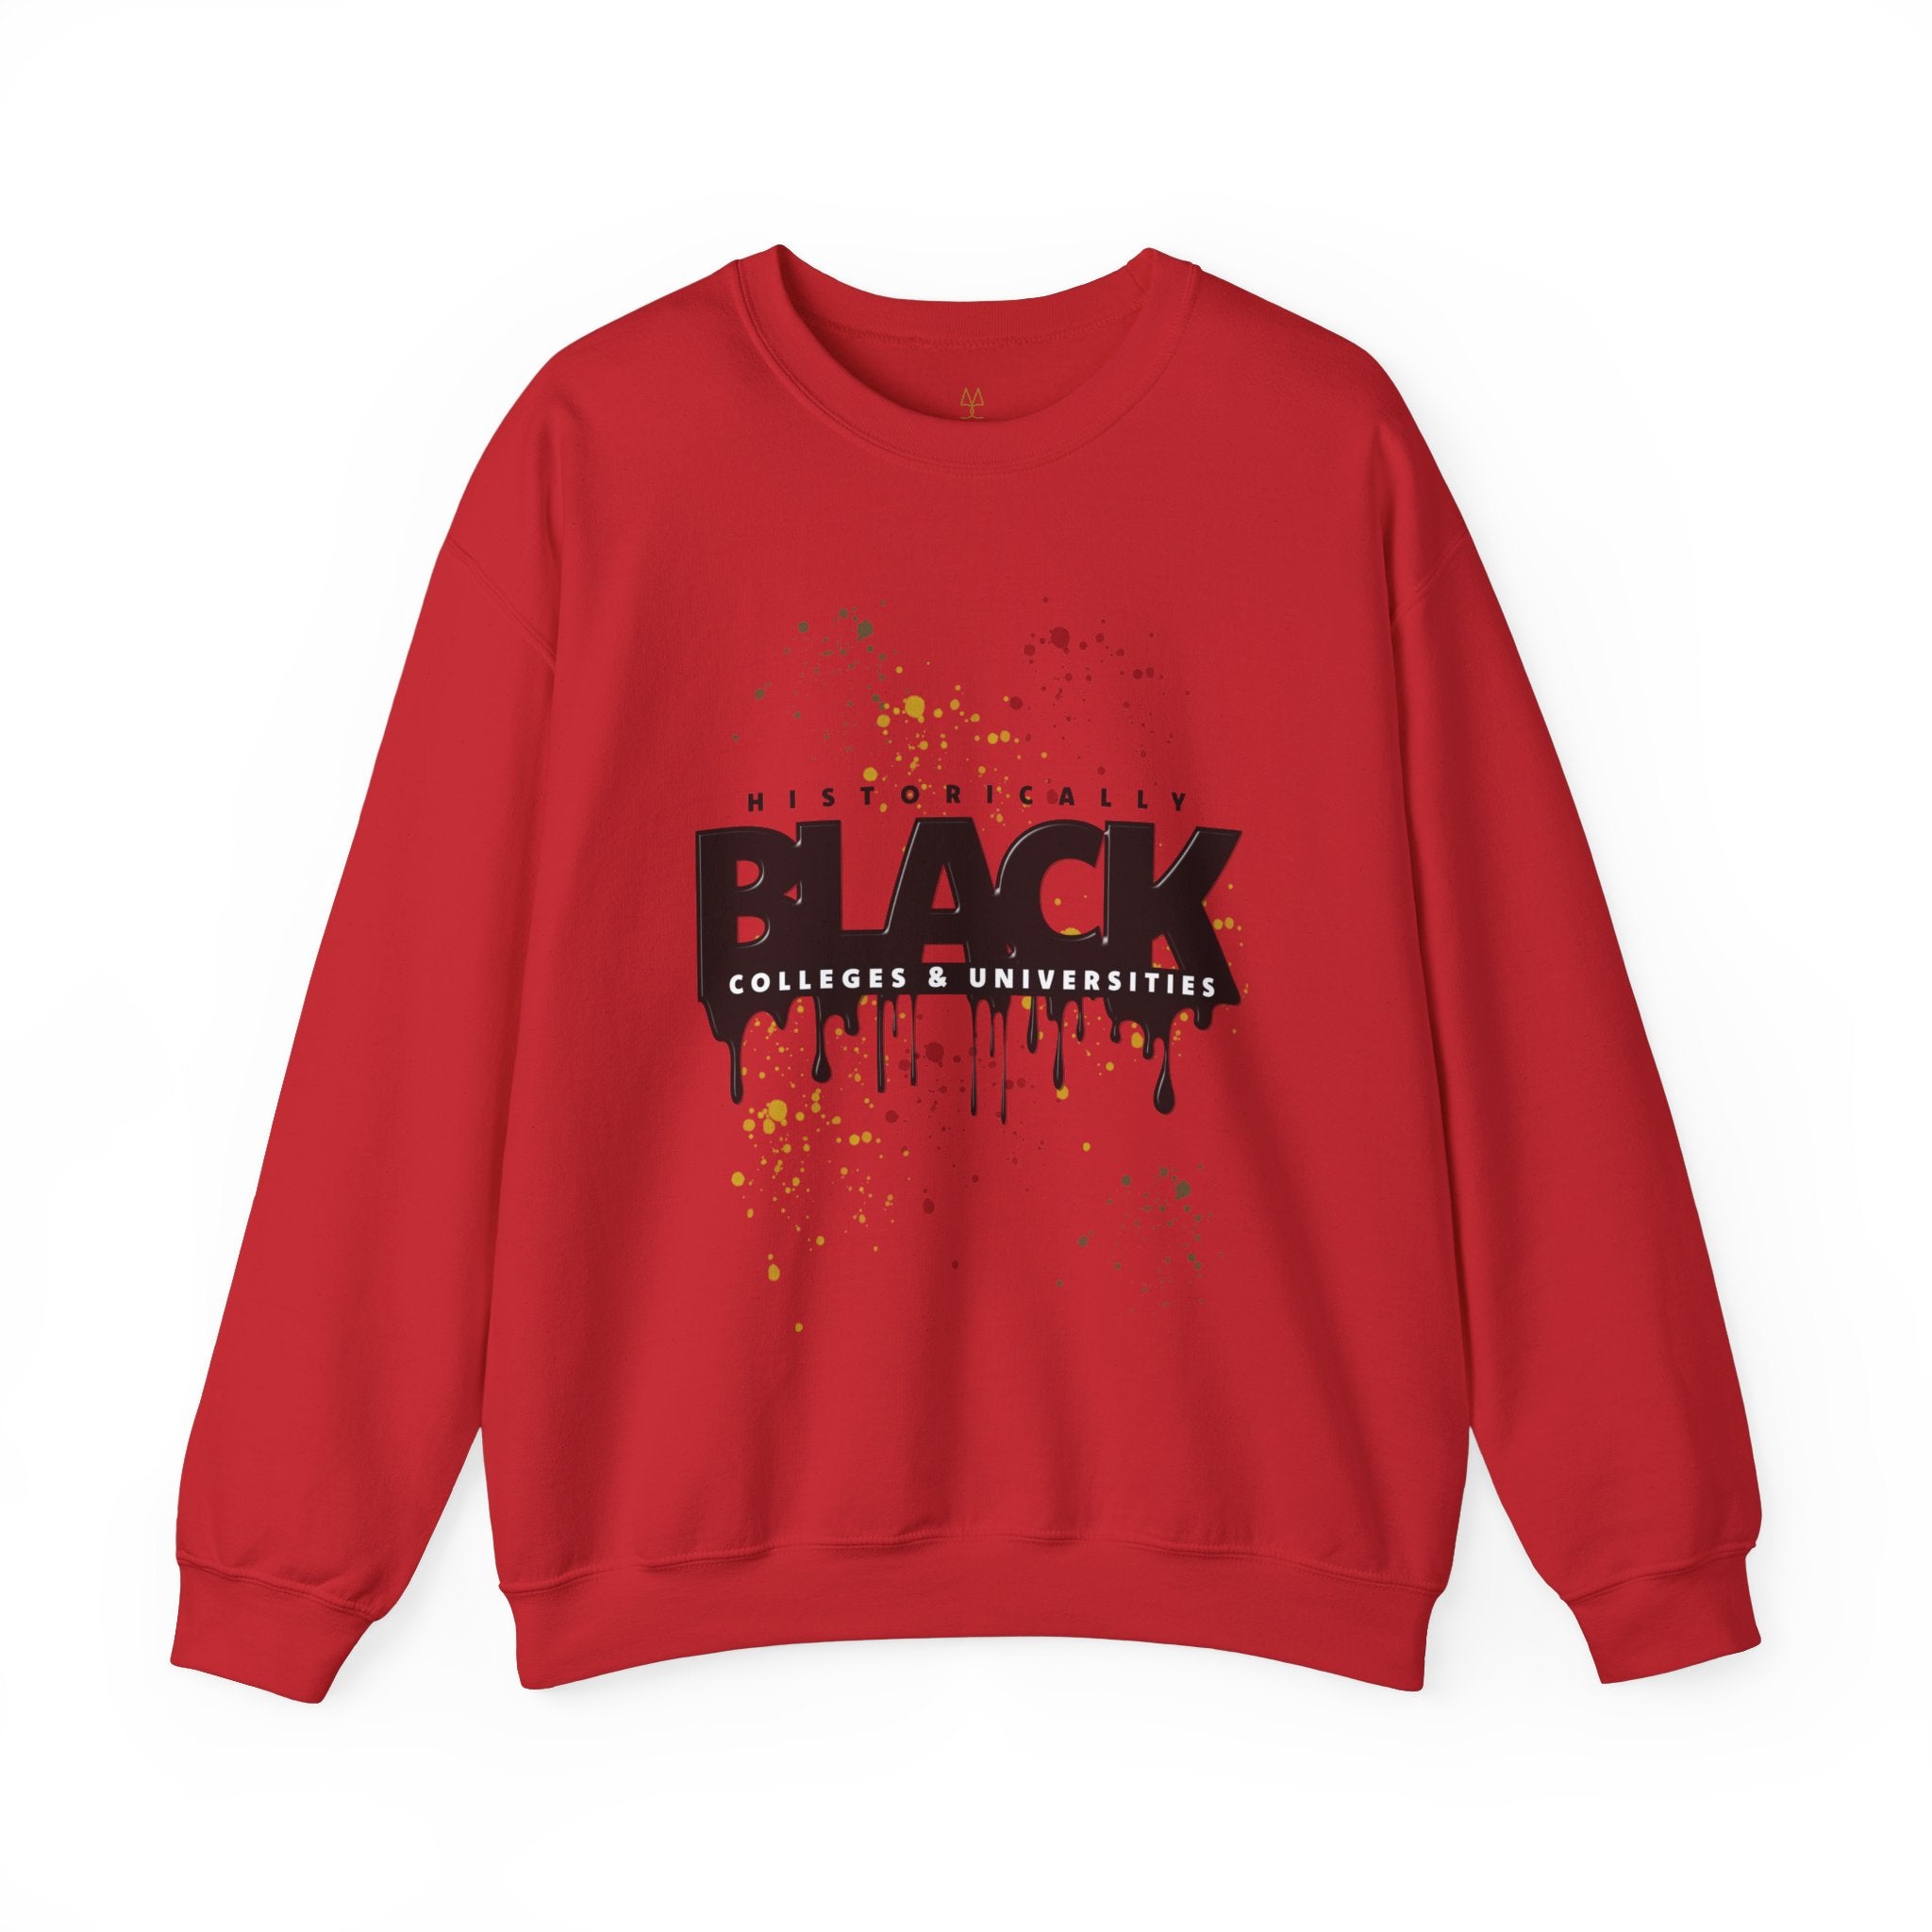 HBCU Black Pride Sweatshirt in red.